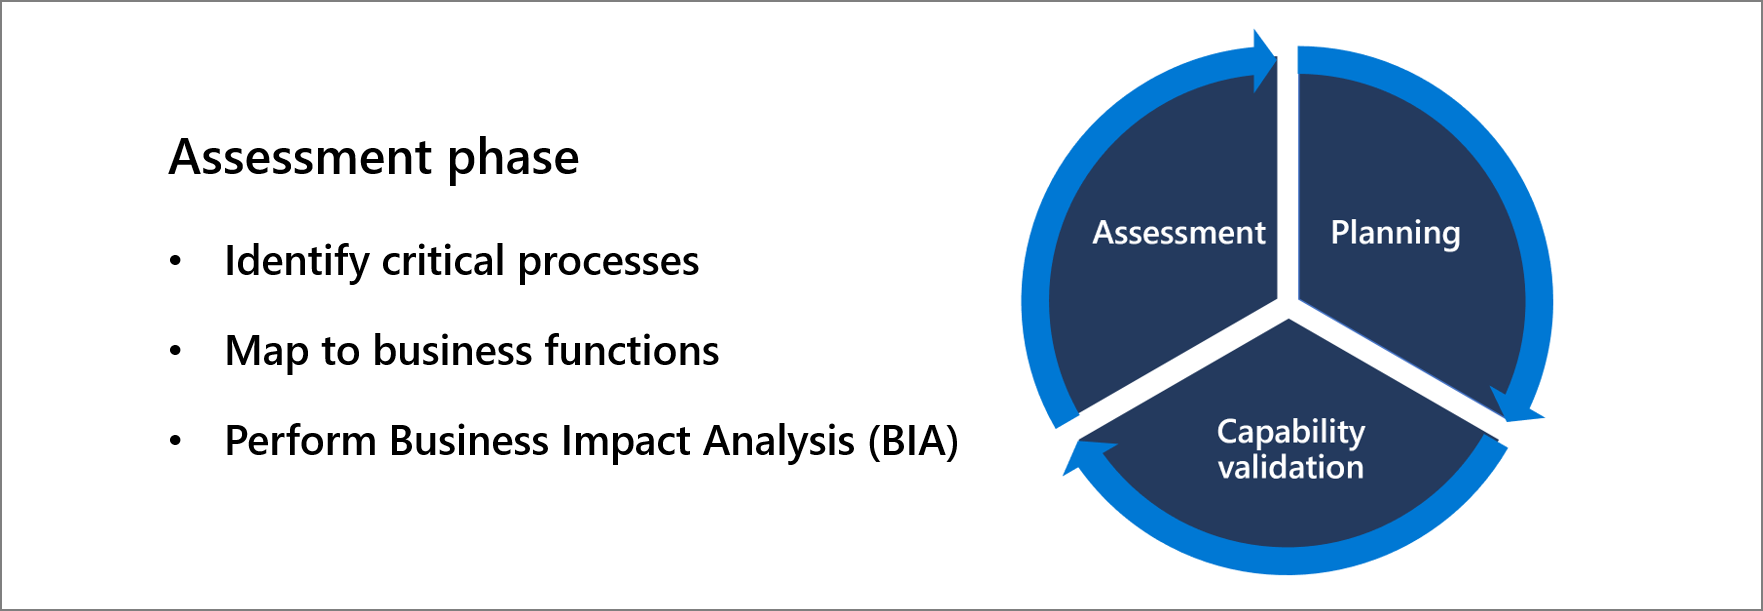 Phase d’évaluation :-identifier les processus critiques, mapper vers les fonctions métier, effectuer une analyse d’impact professionnel